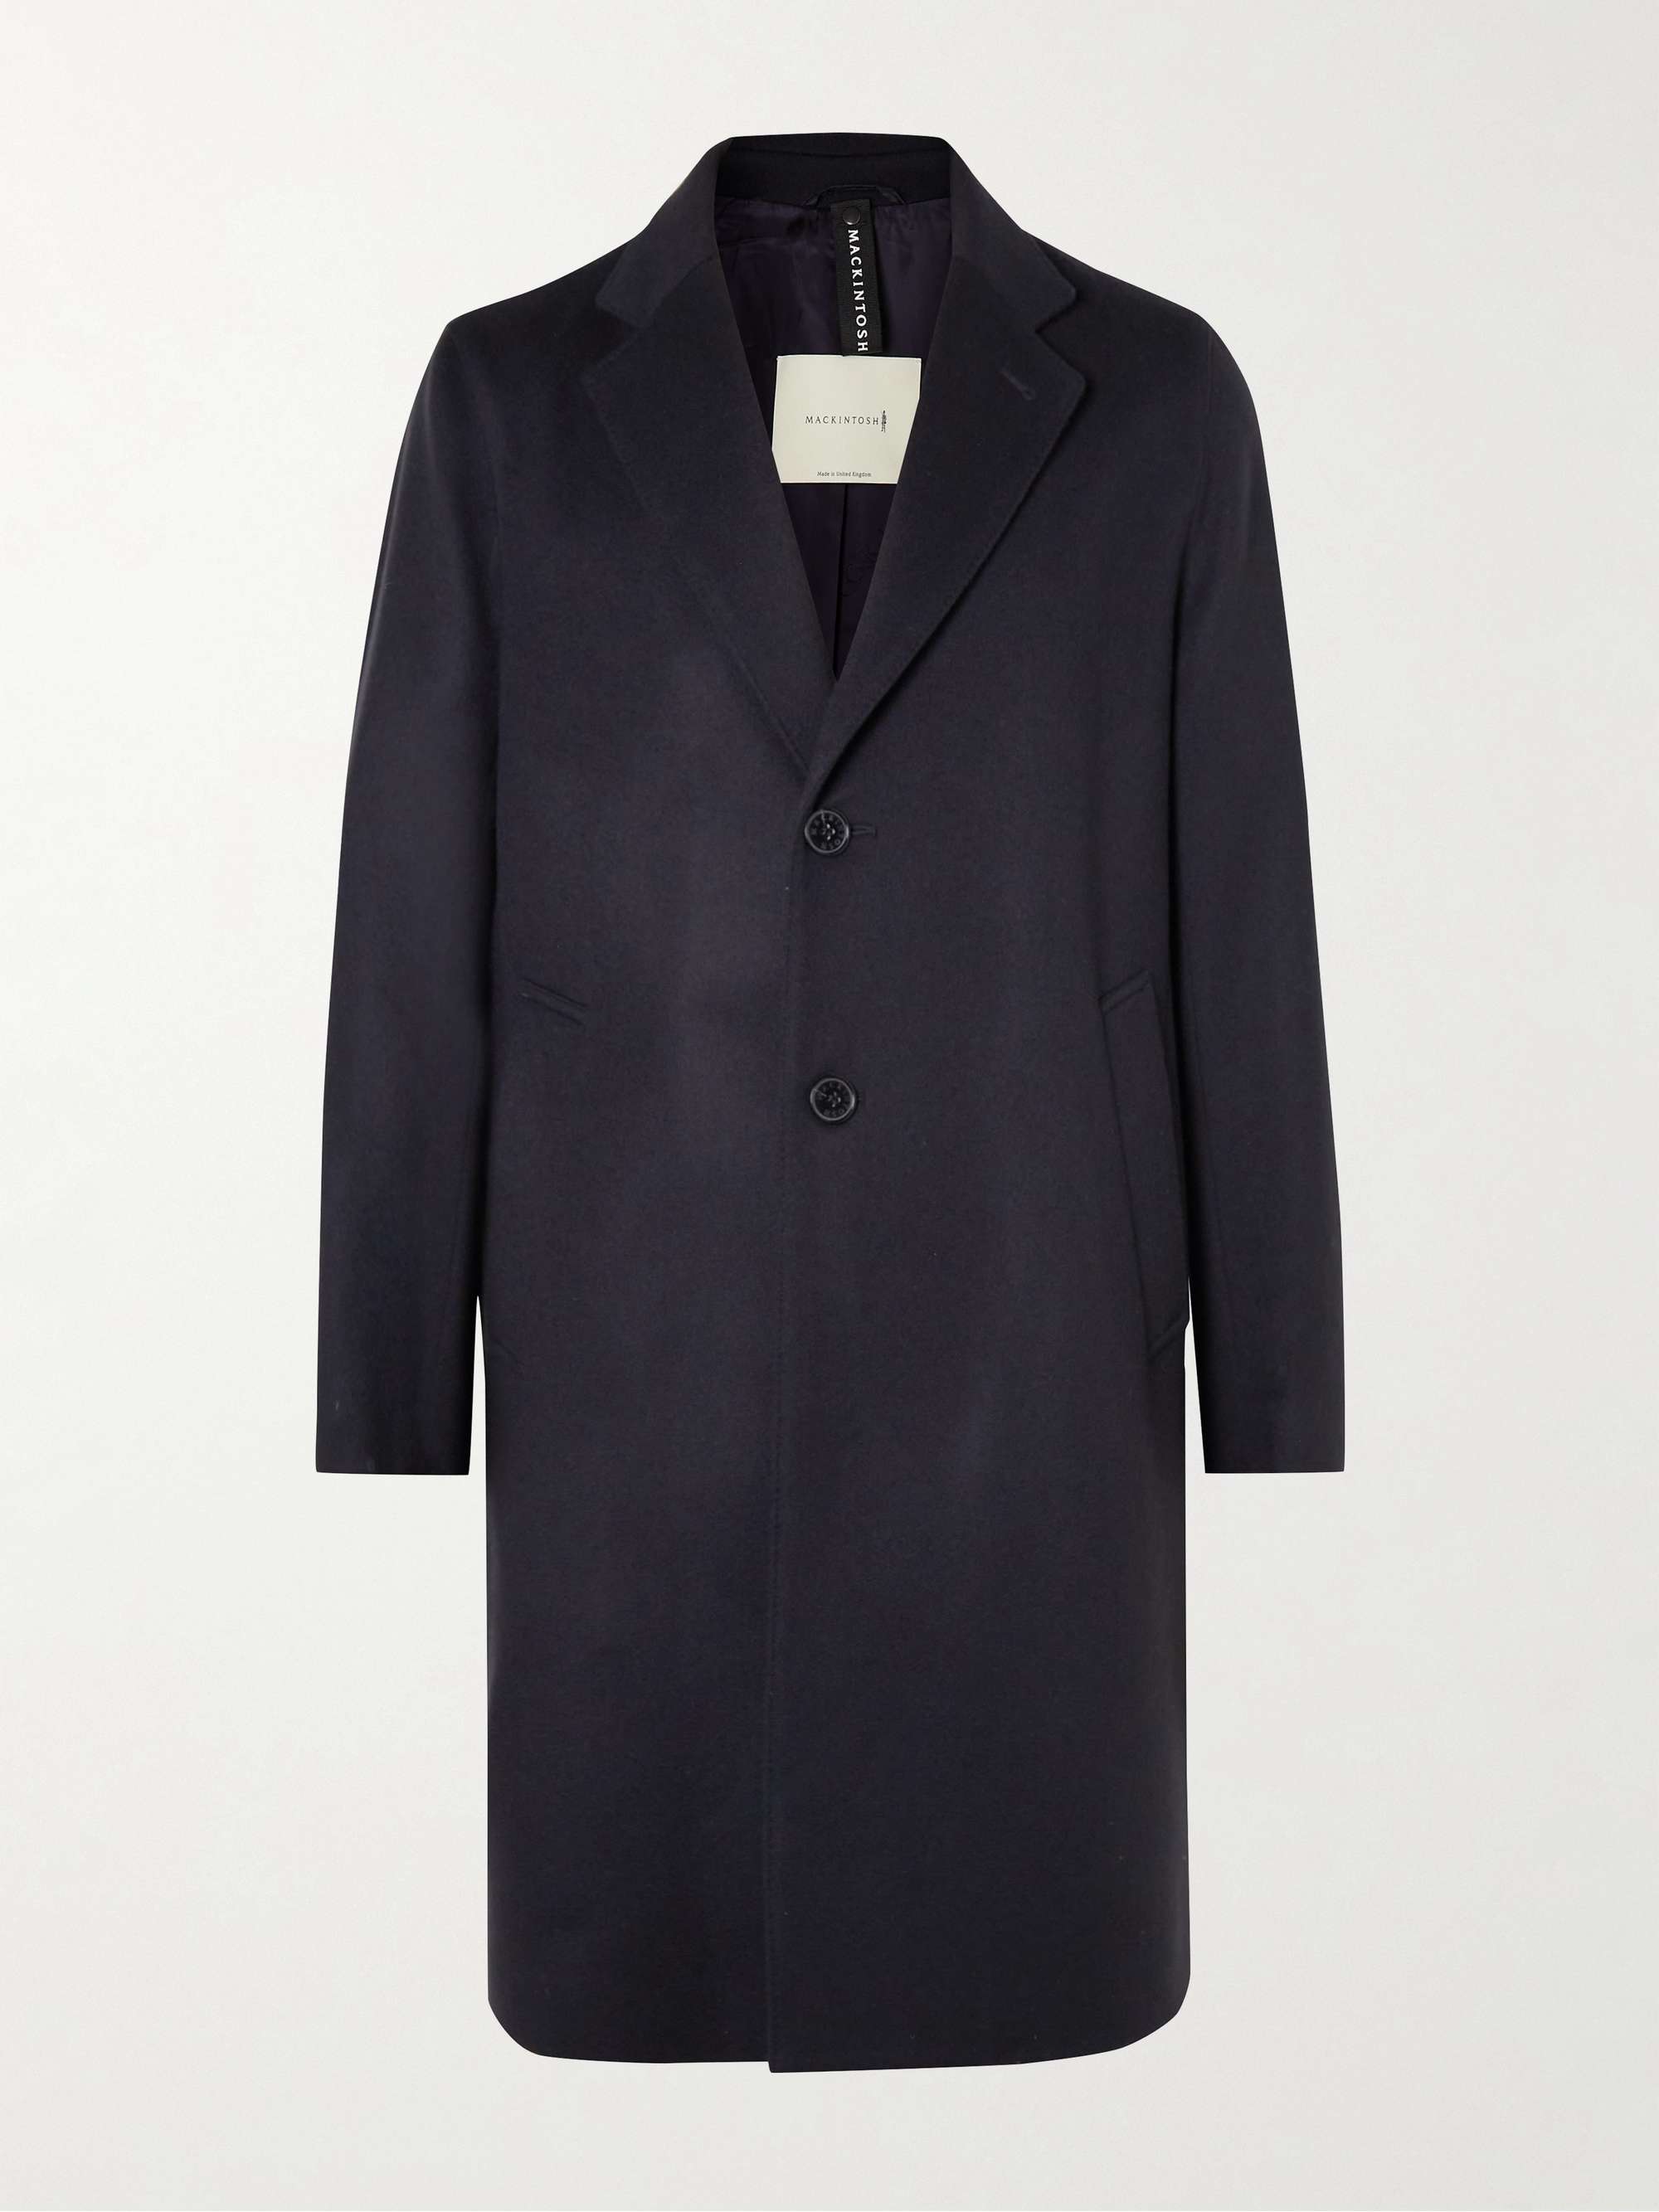 Mackintosh Men's New Stanley Chesterfield Coat in Beige Mackintosh